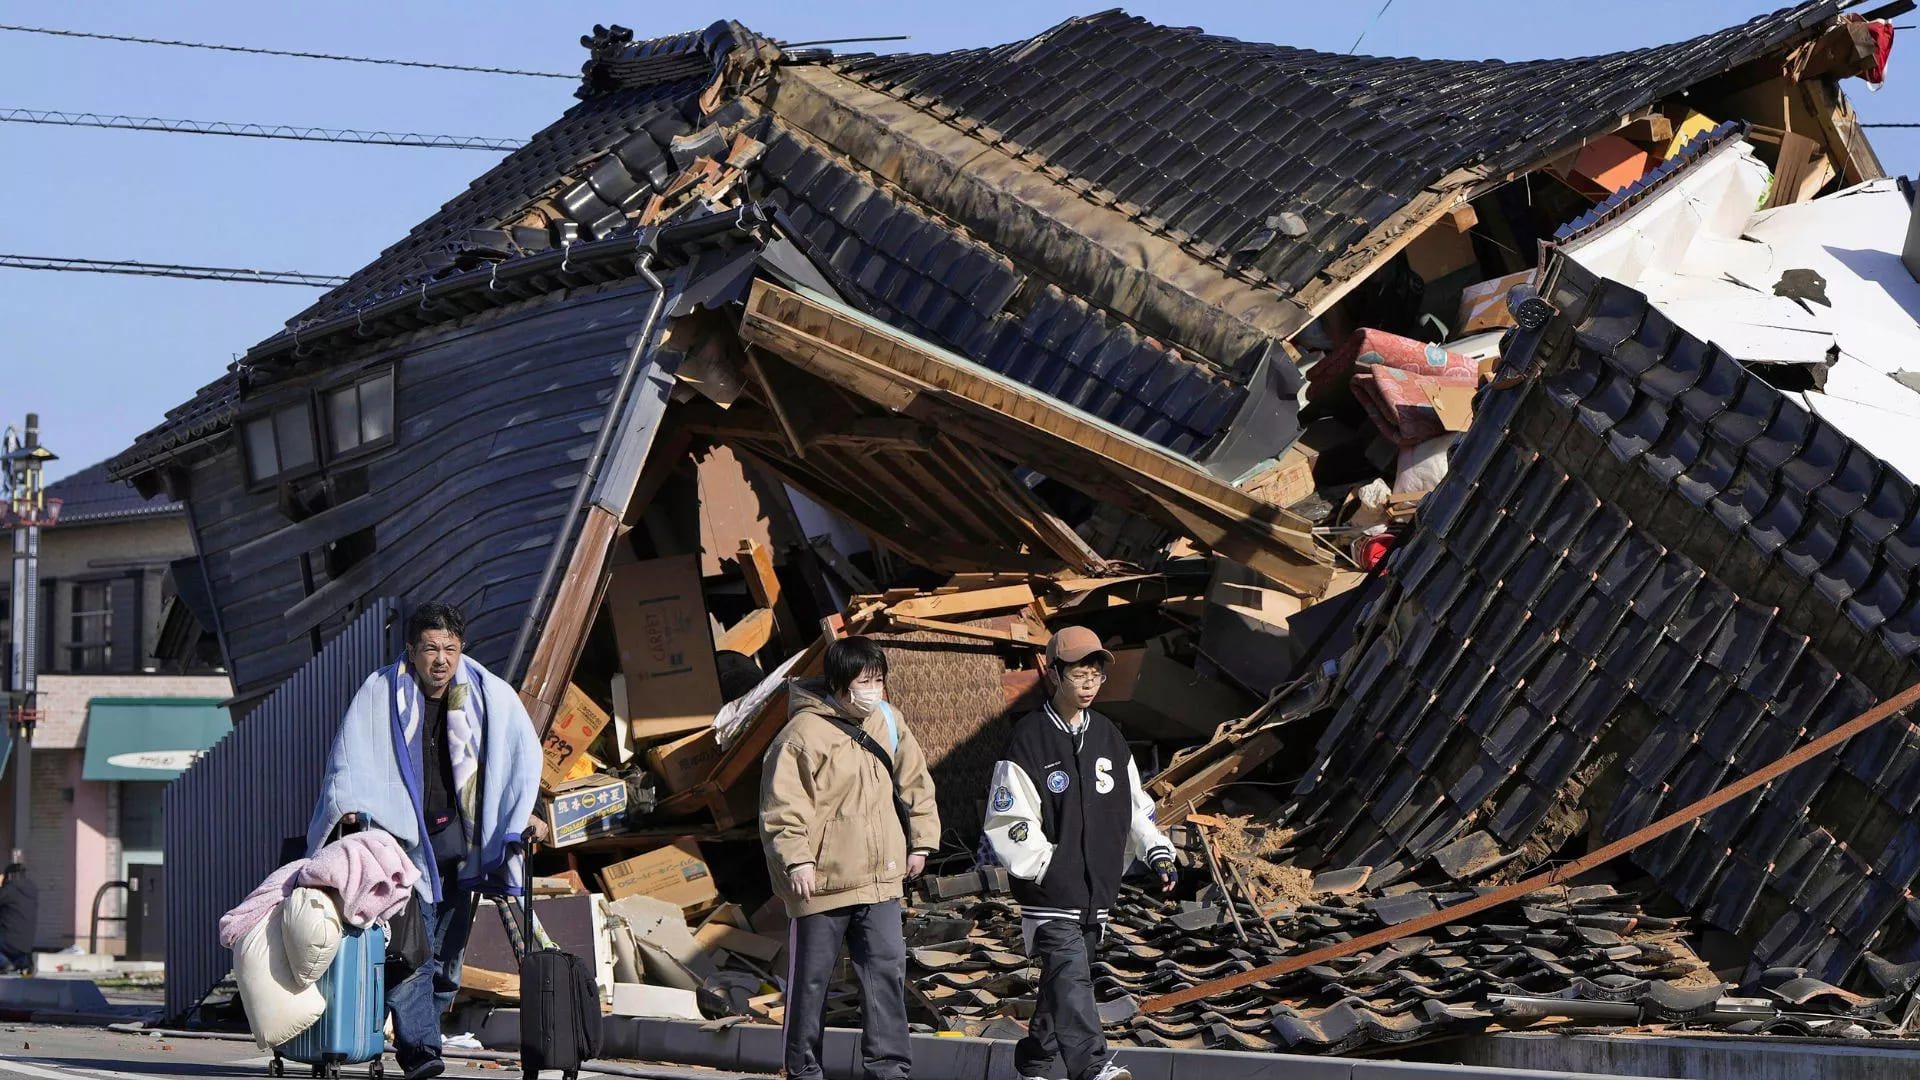 Korban Tewas Gempa Bumi Jepang Menjadi 64 Orang, Usaha Penyelamatan Tersendat